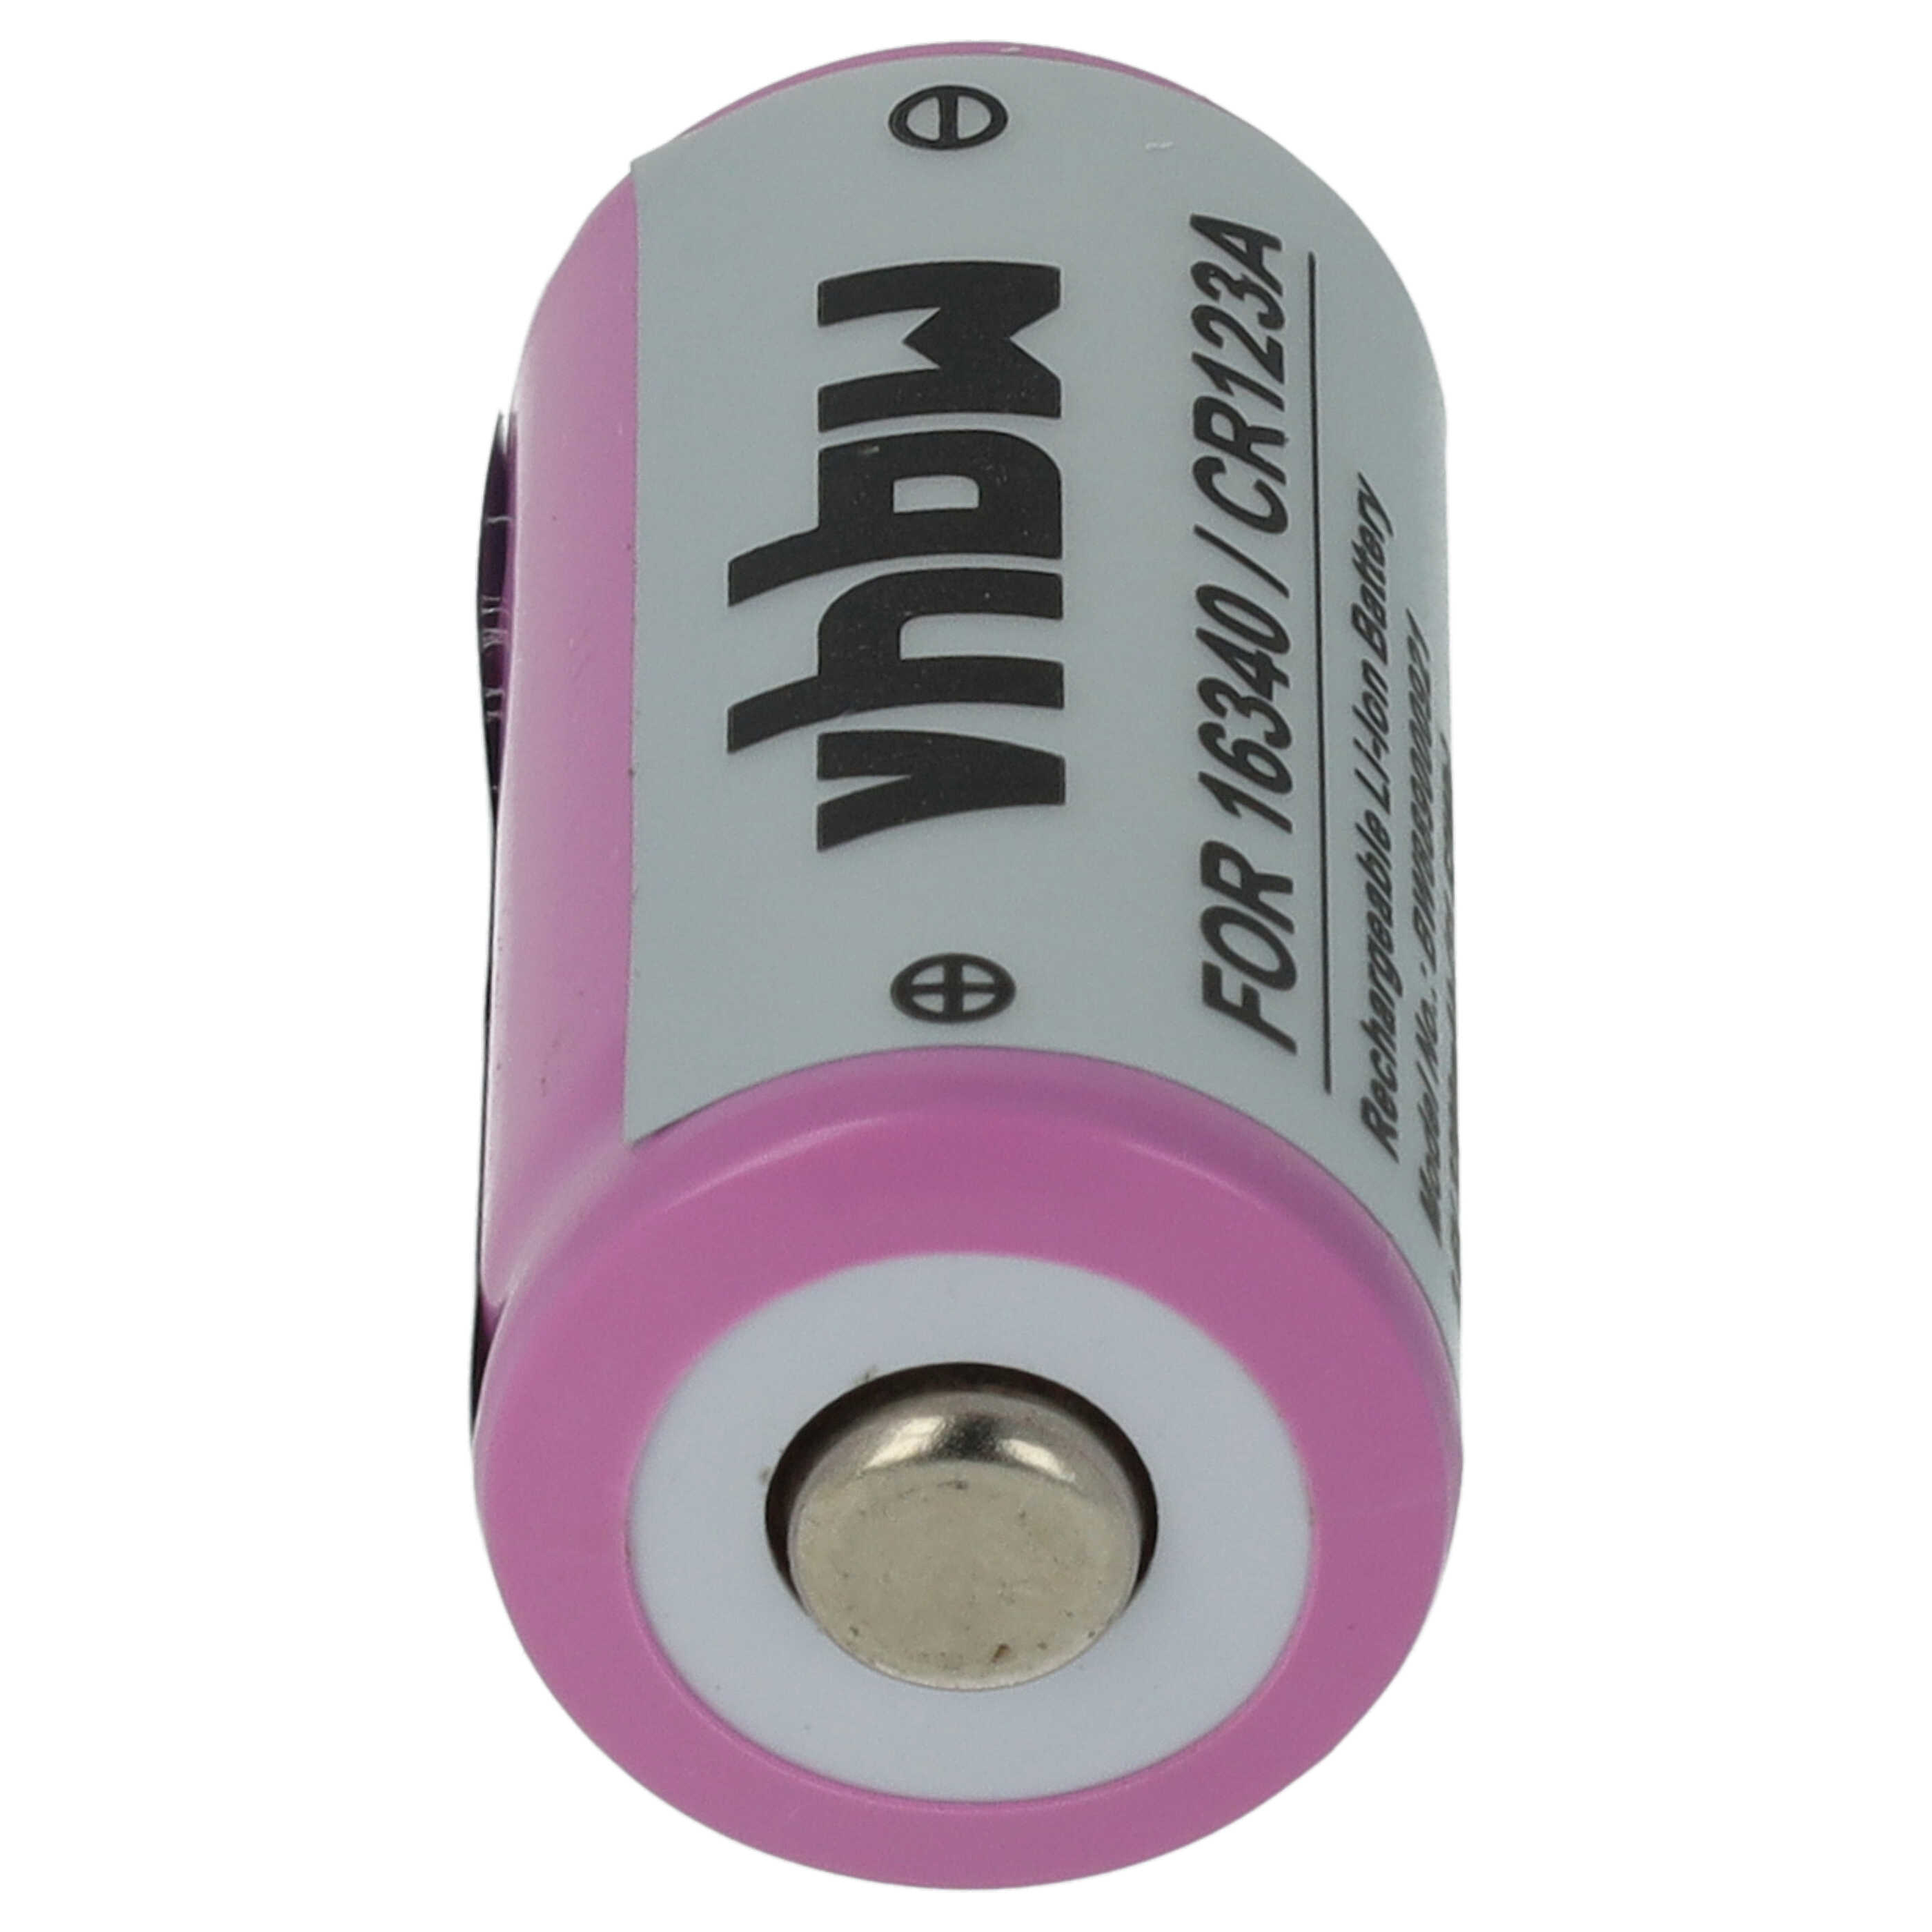 Batteries (2x pièces) remplace 16340, CR123R, CR17335, CR123A universelle - 800mAh 3,6V Li-ion, 1x cellules